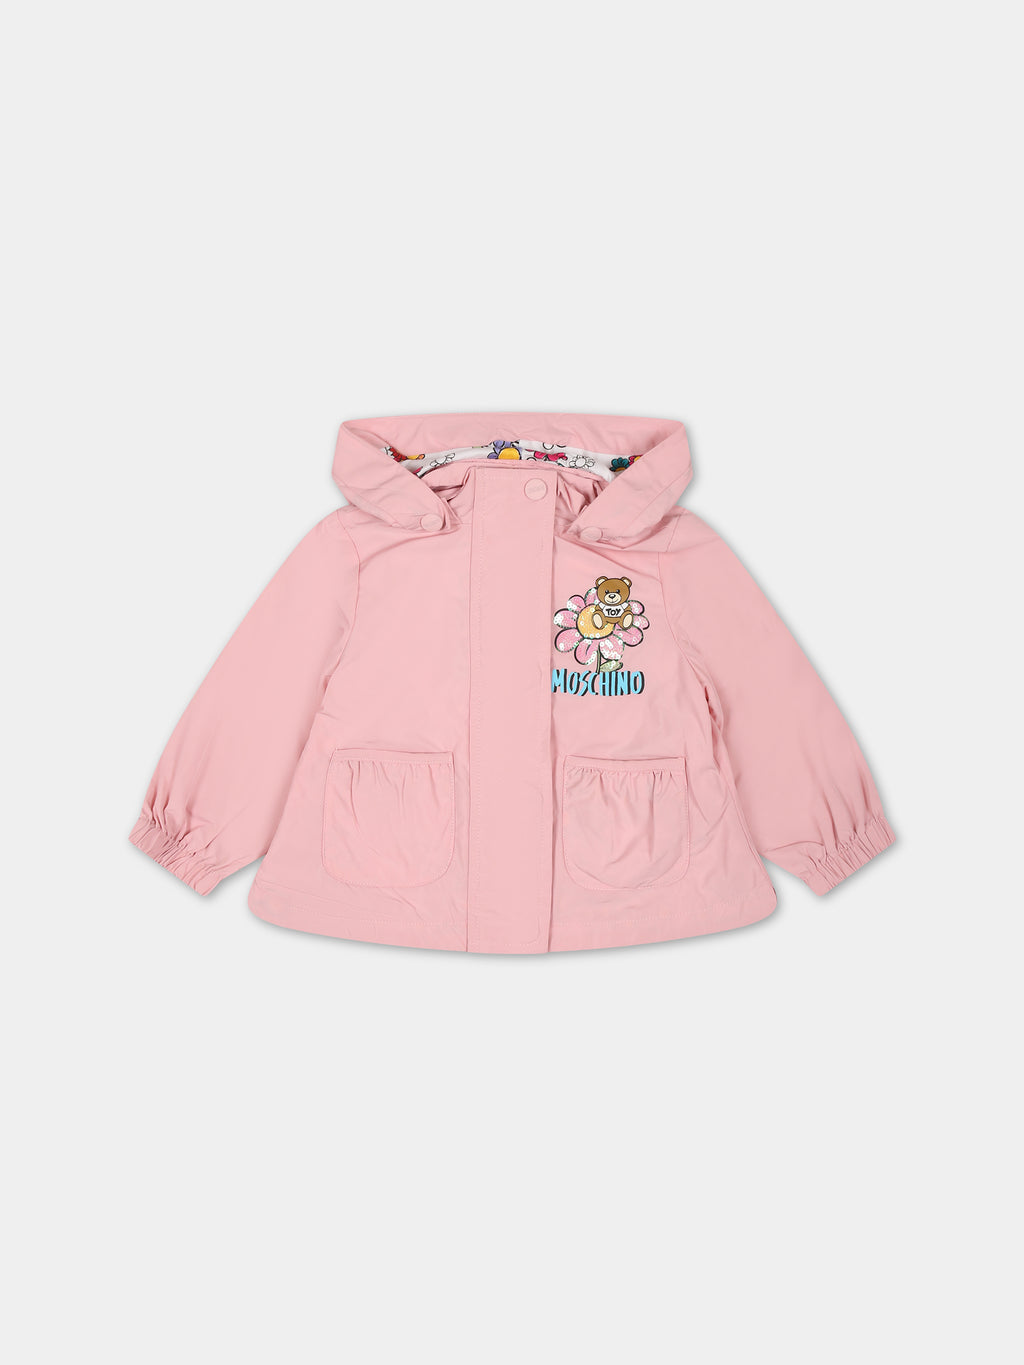 Imperméable rose pour bébé fille avec Teddy Bear et logo